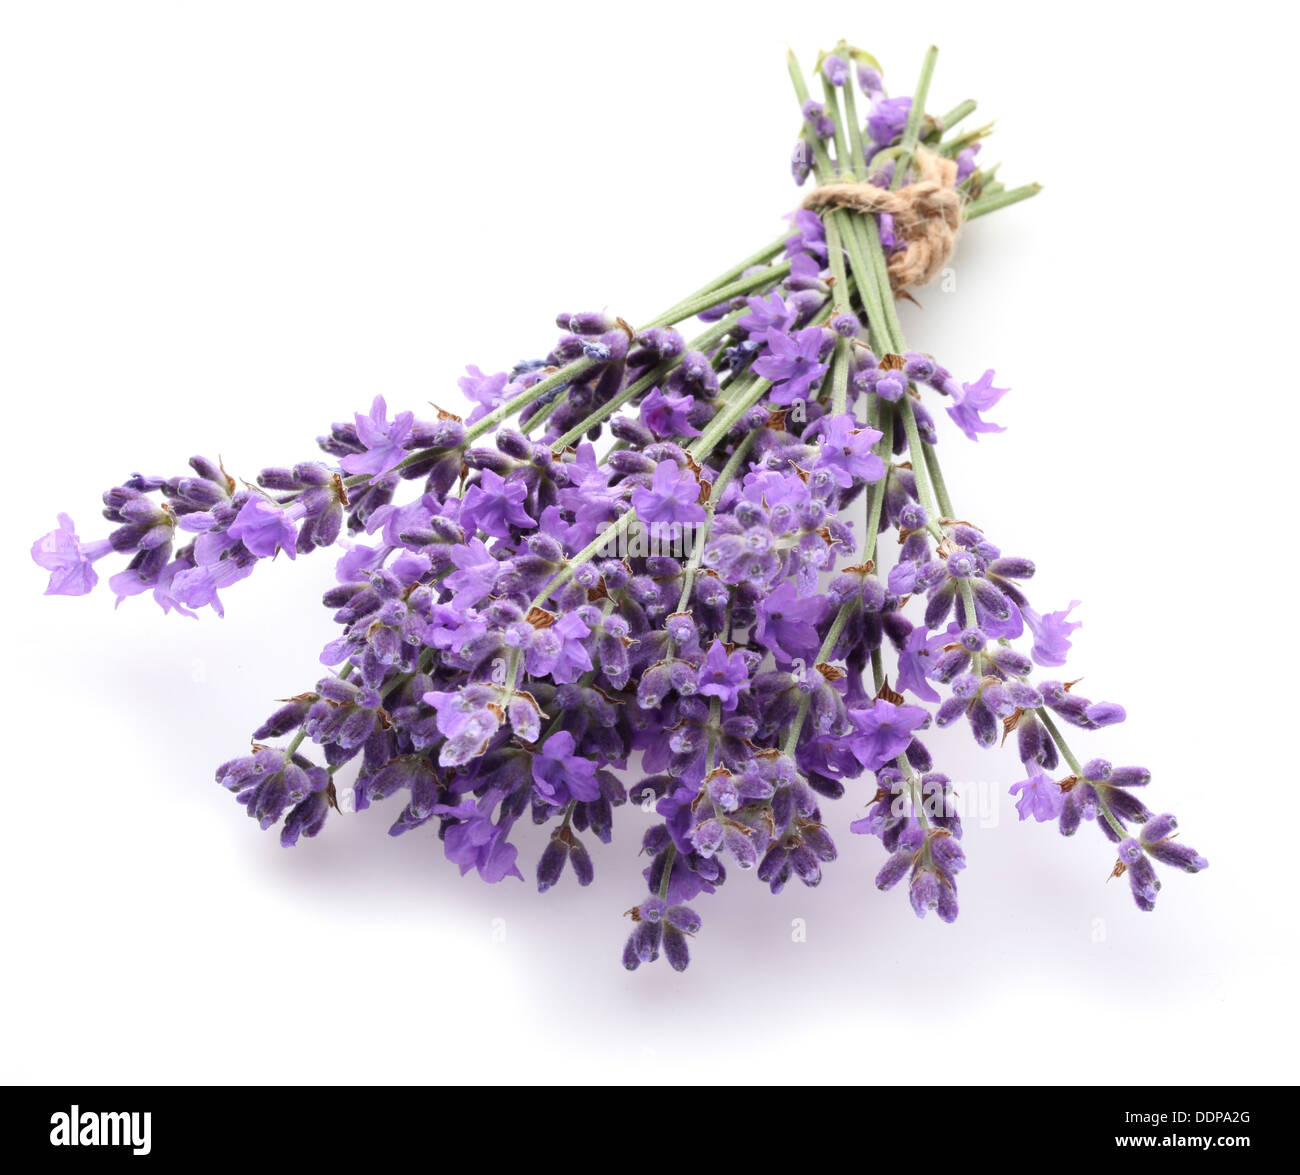 Haufen von Lavendel auf einem weißen Hintergrund. Stockfoto